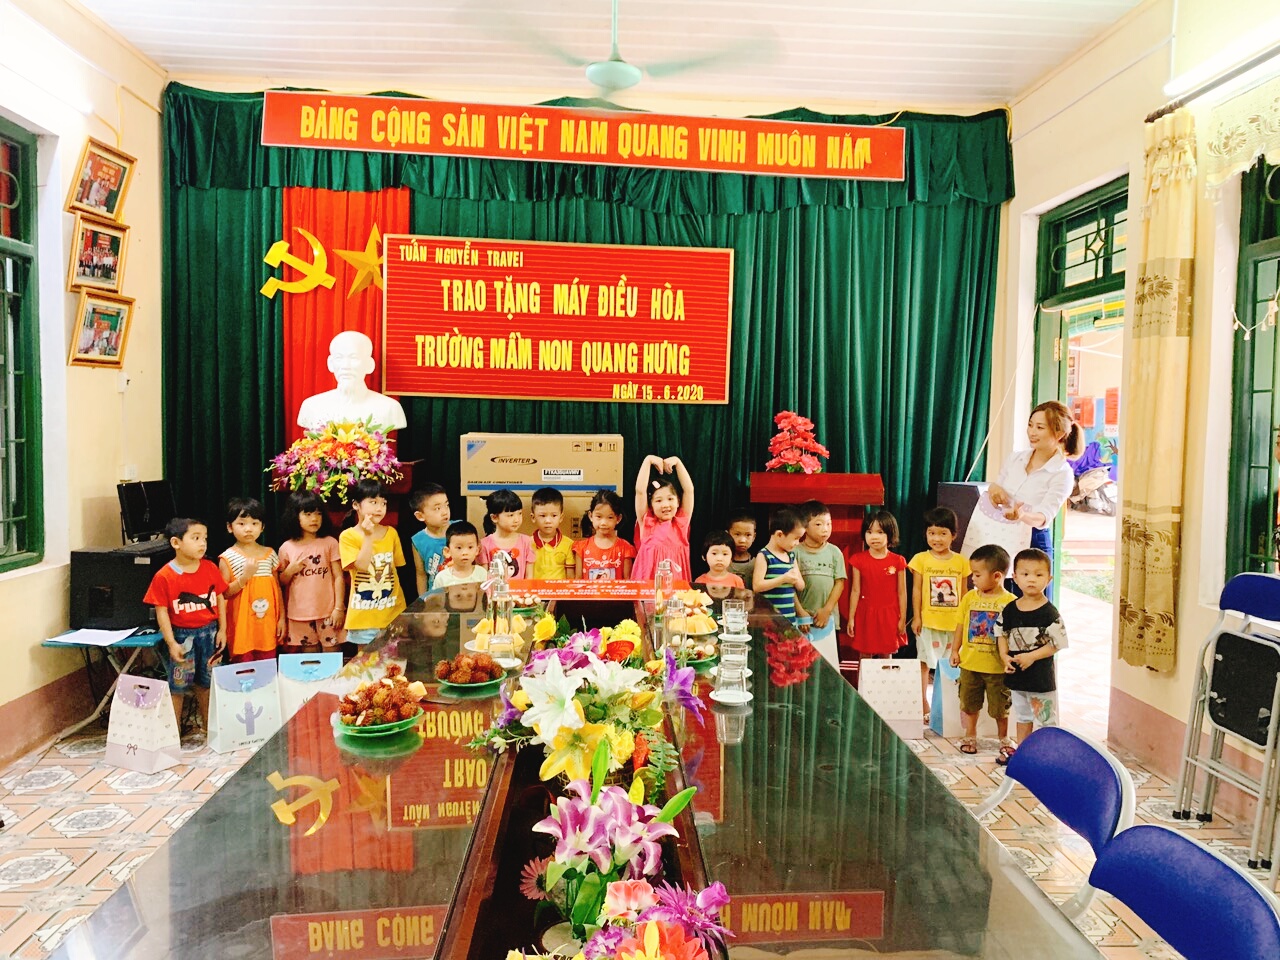 Tuấn Nguyễn Travel trao tặng điều hòa cho trường mầm non Quang Hưng